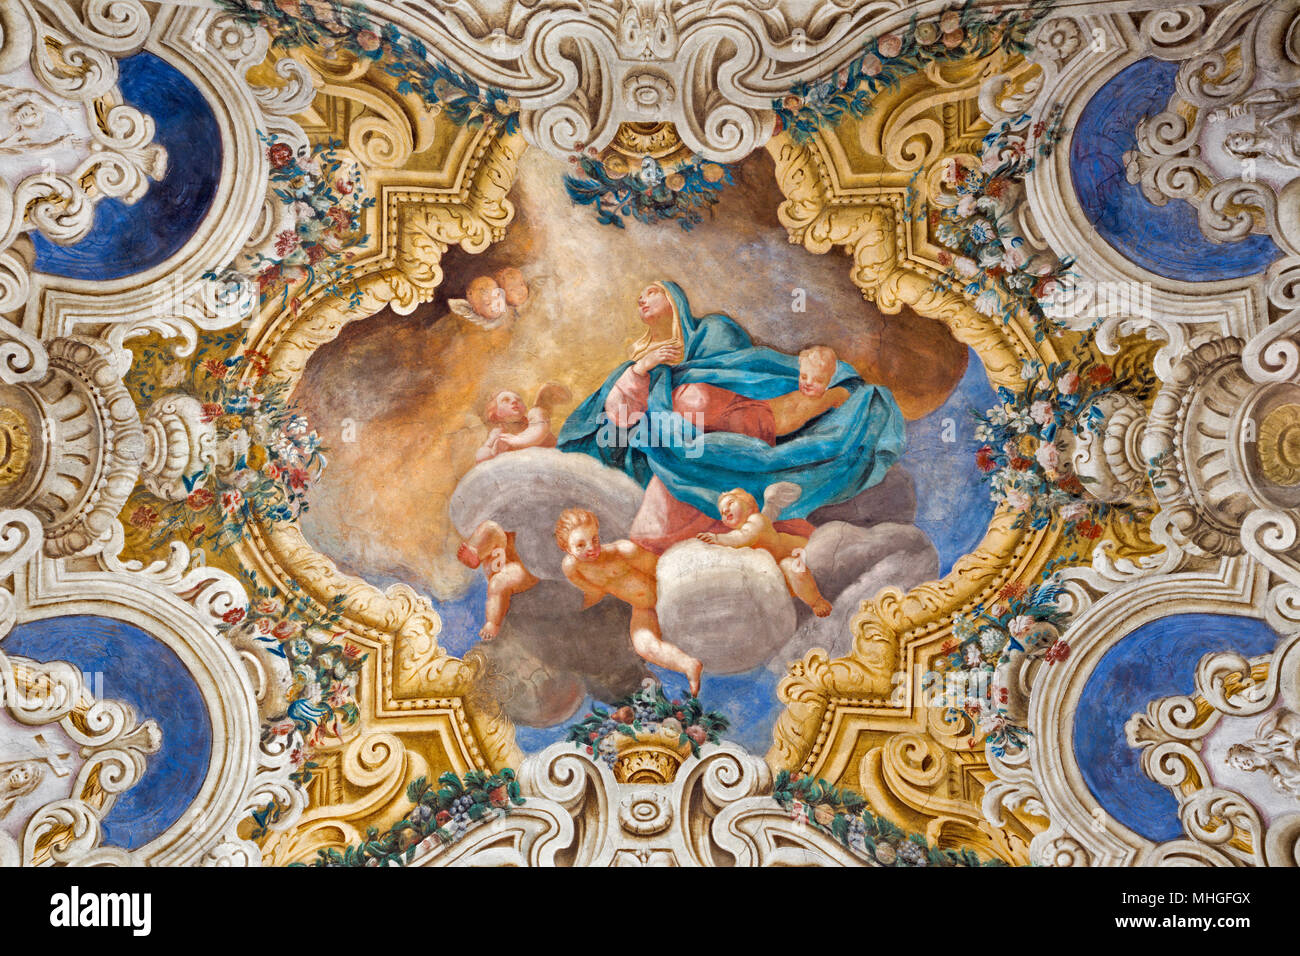 PARMA, Italia - 16 de abril de 2018: El techo de la Asumption freso de la Virgen María en la iglesia Chiesa di Santa Croce de Giovanni Maria Conti della Camera Foto de stock